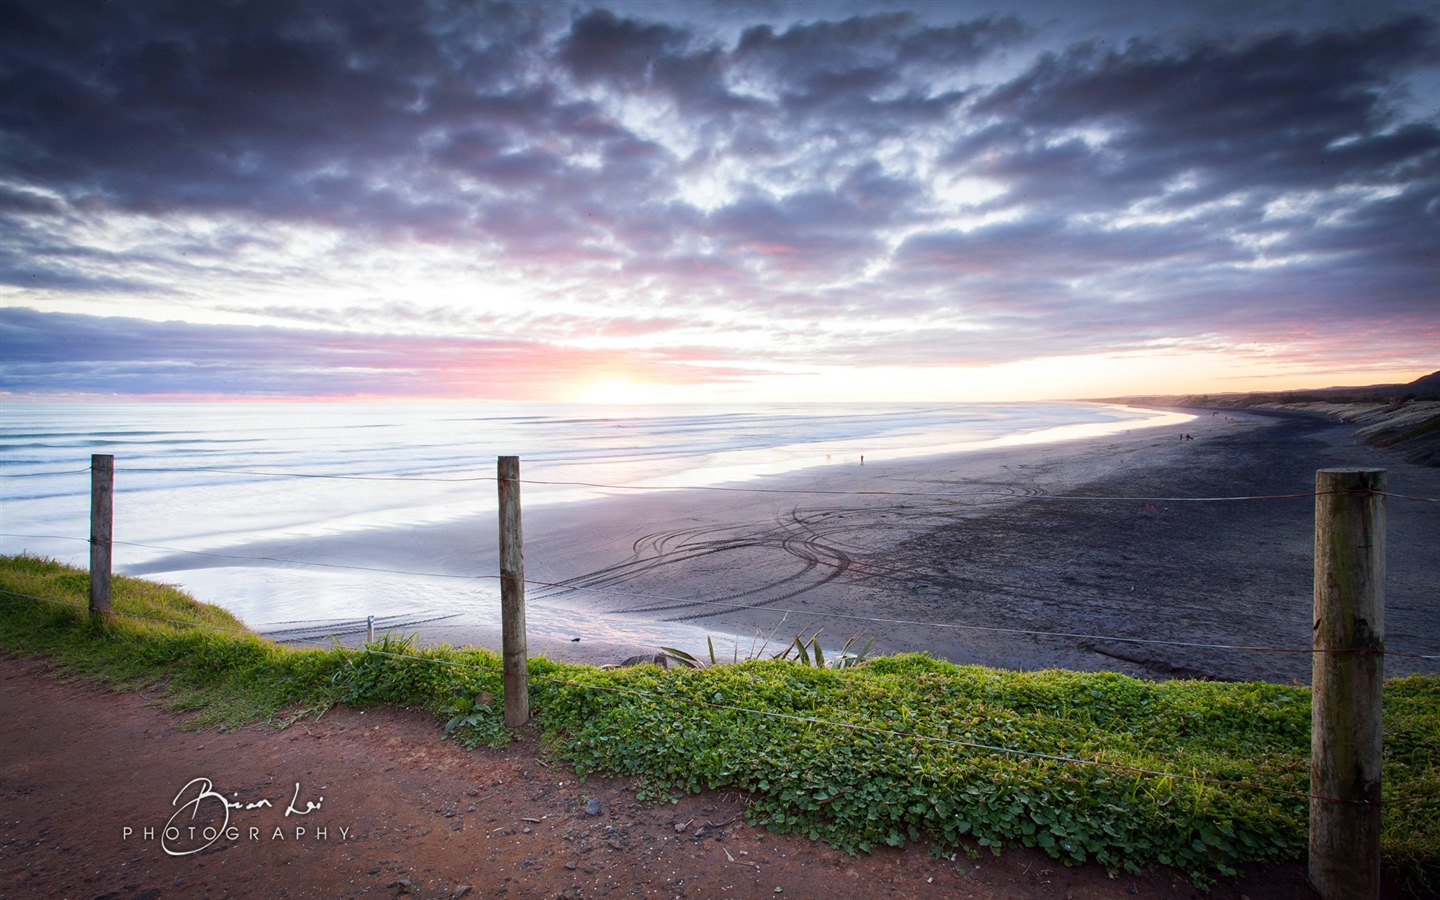 Nouvelle-Zélande Île du Nord de beaux paysages, Windows 8 fonds d'écran thématiques #16 - 1440x900